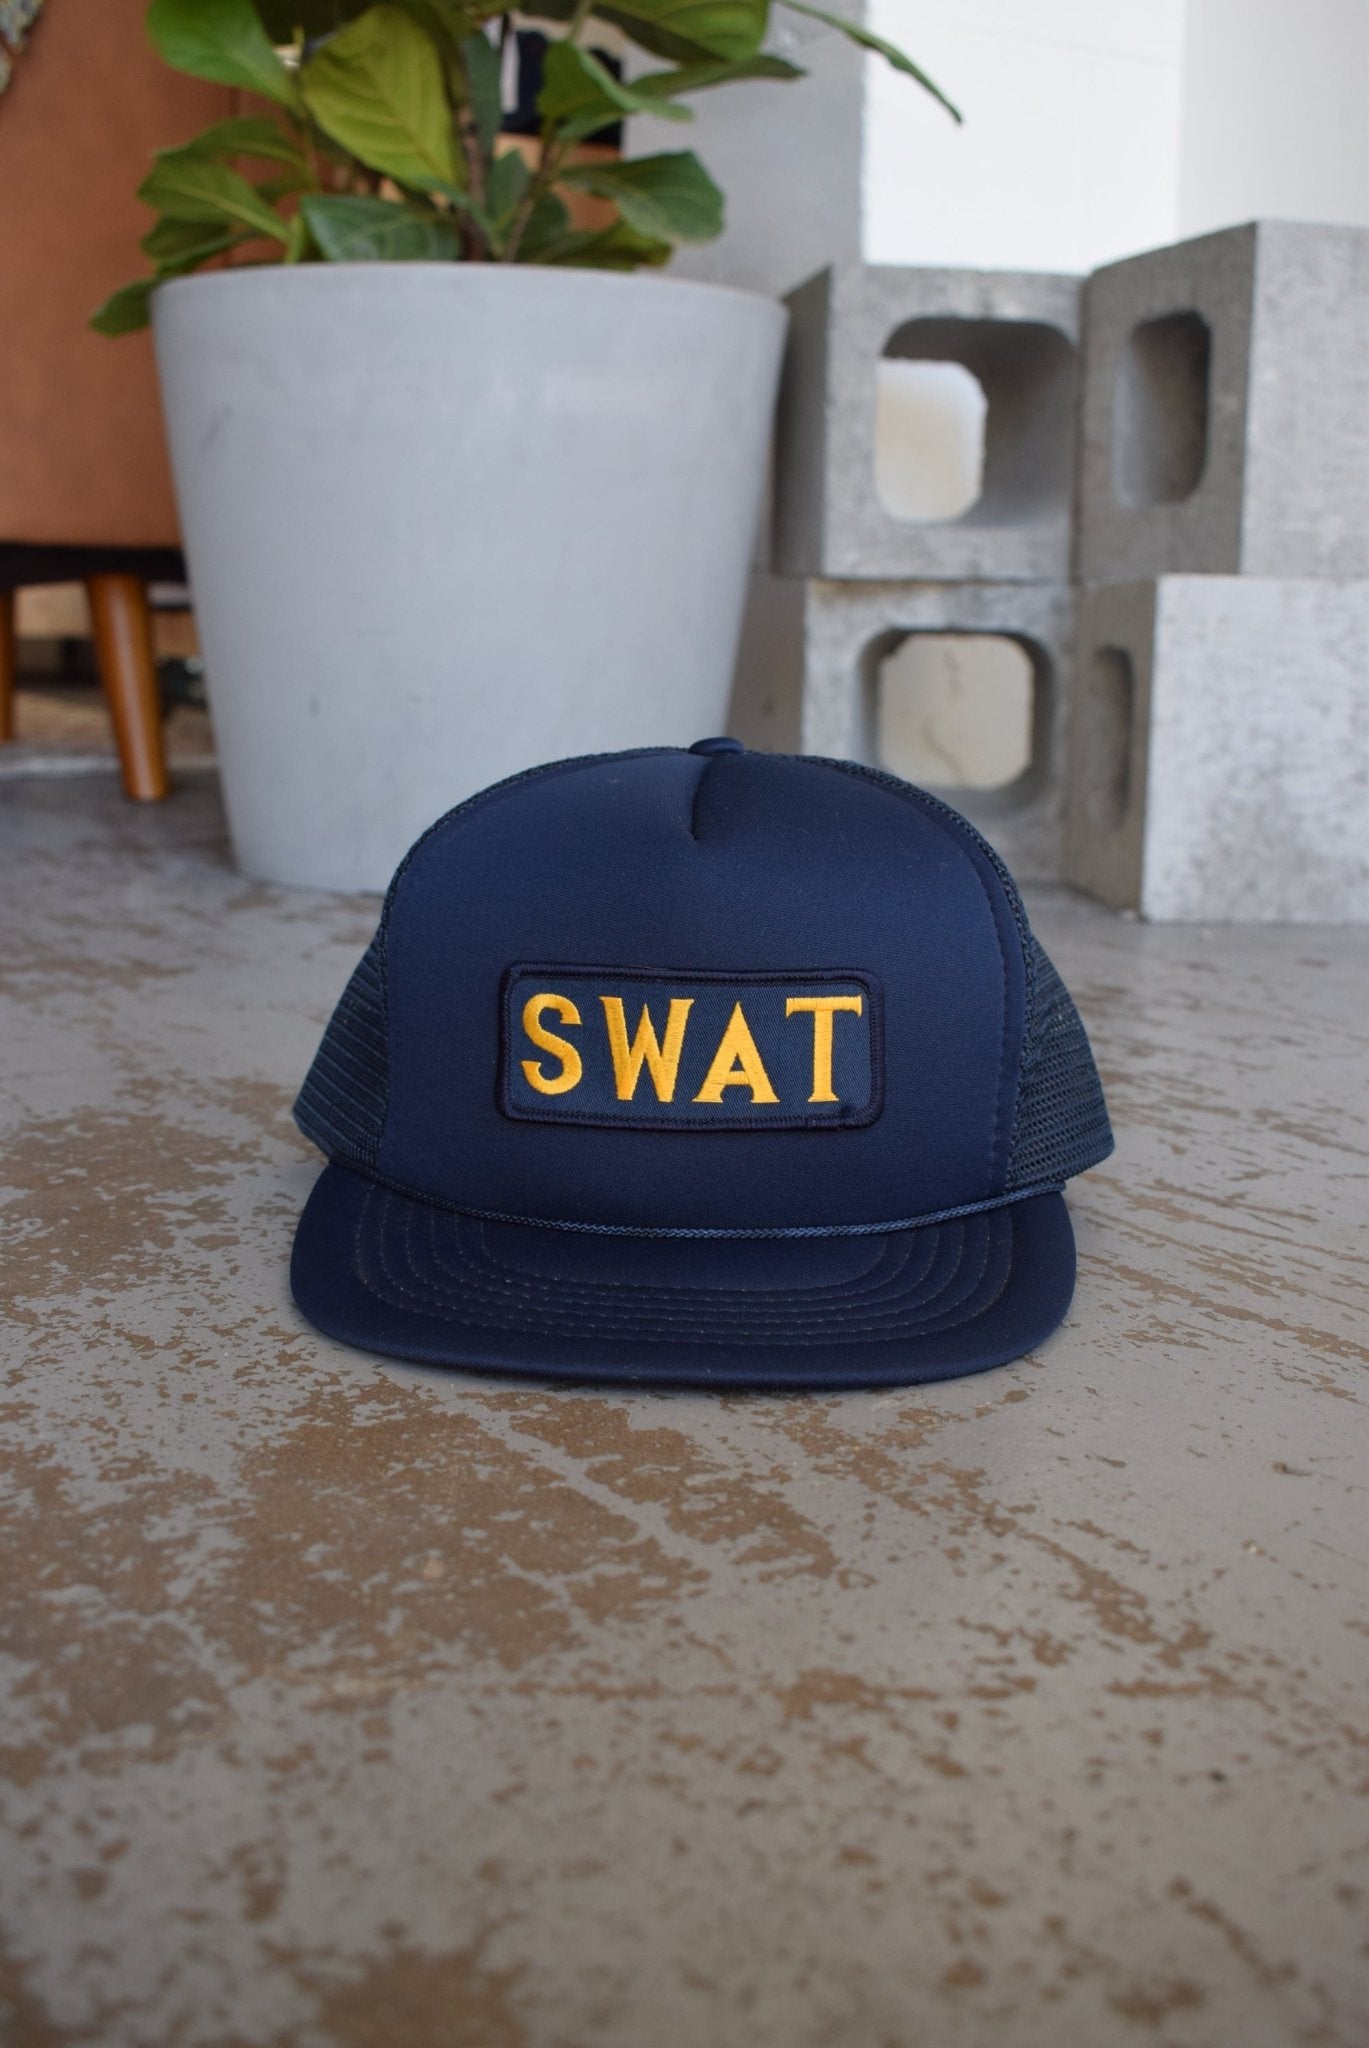 Vintage 90s SWAT Trucker Hat - Retrospective Store